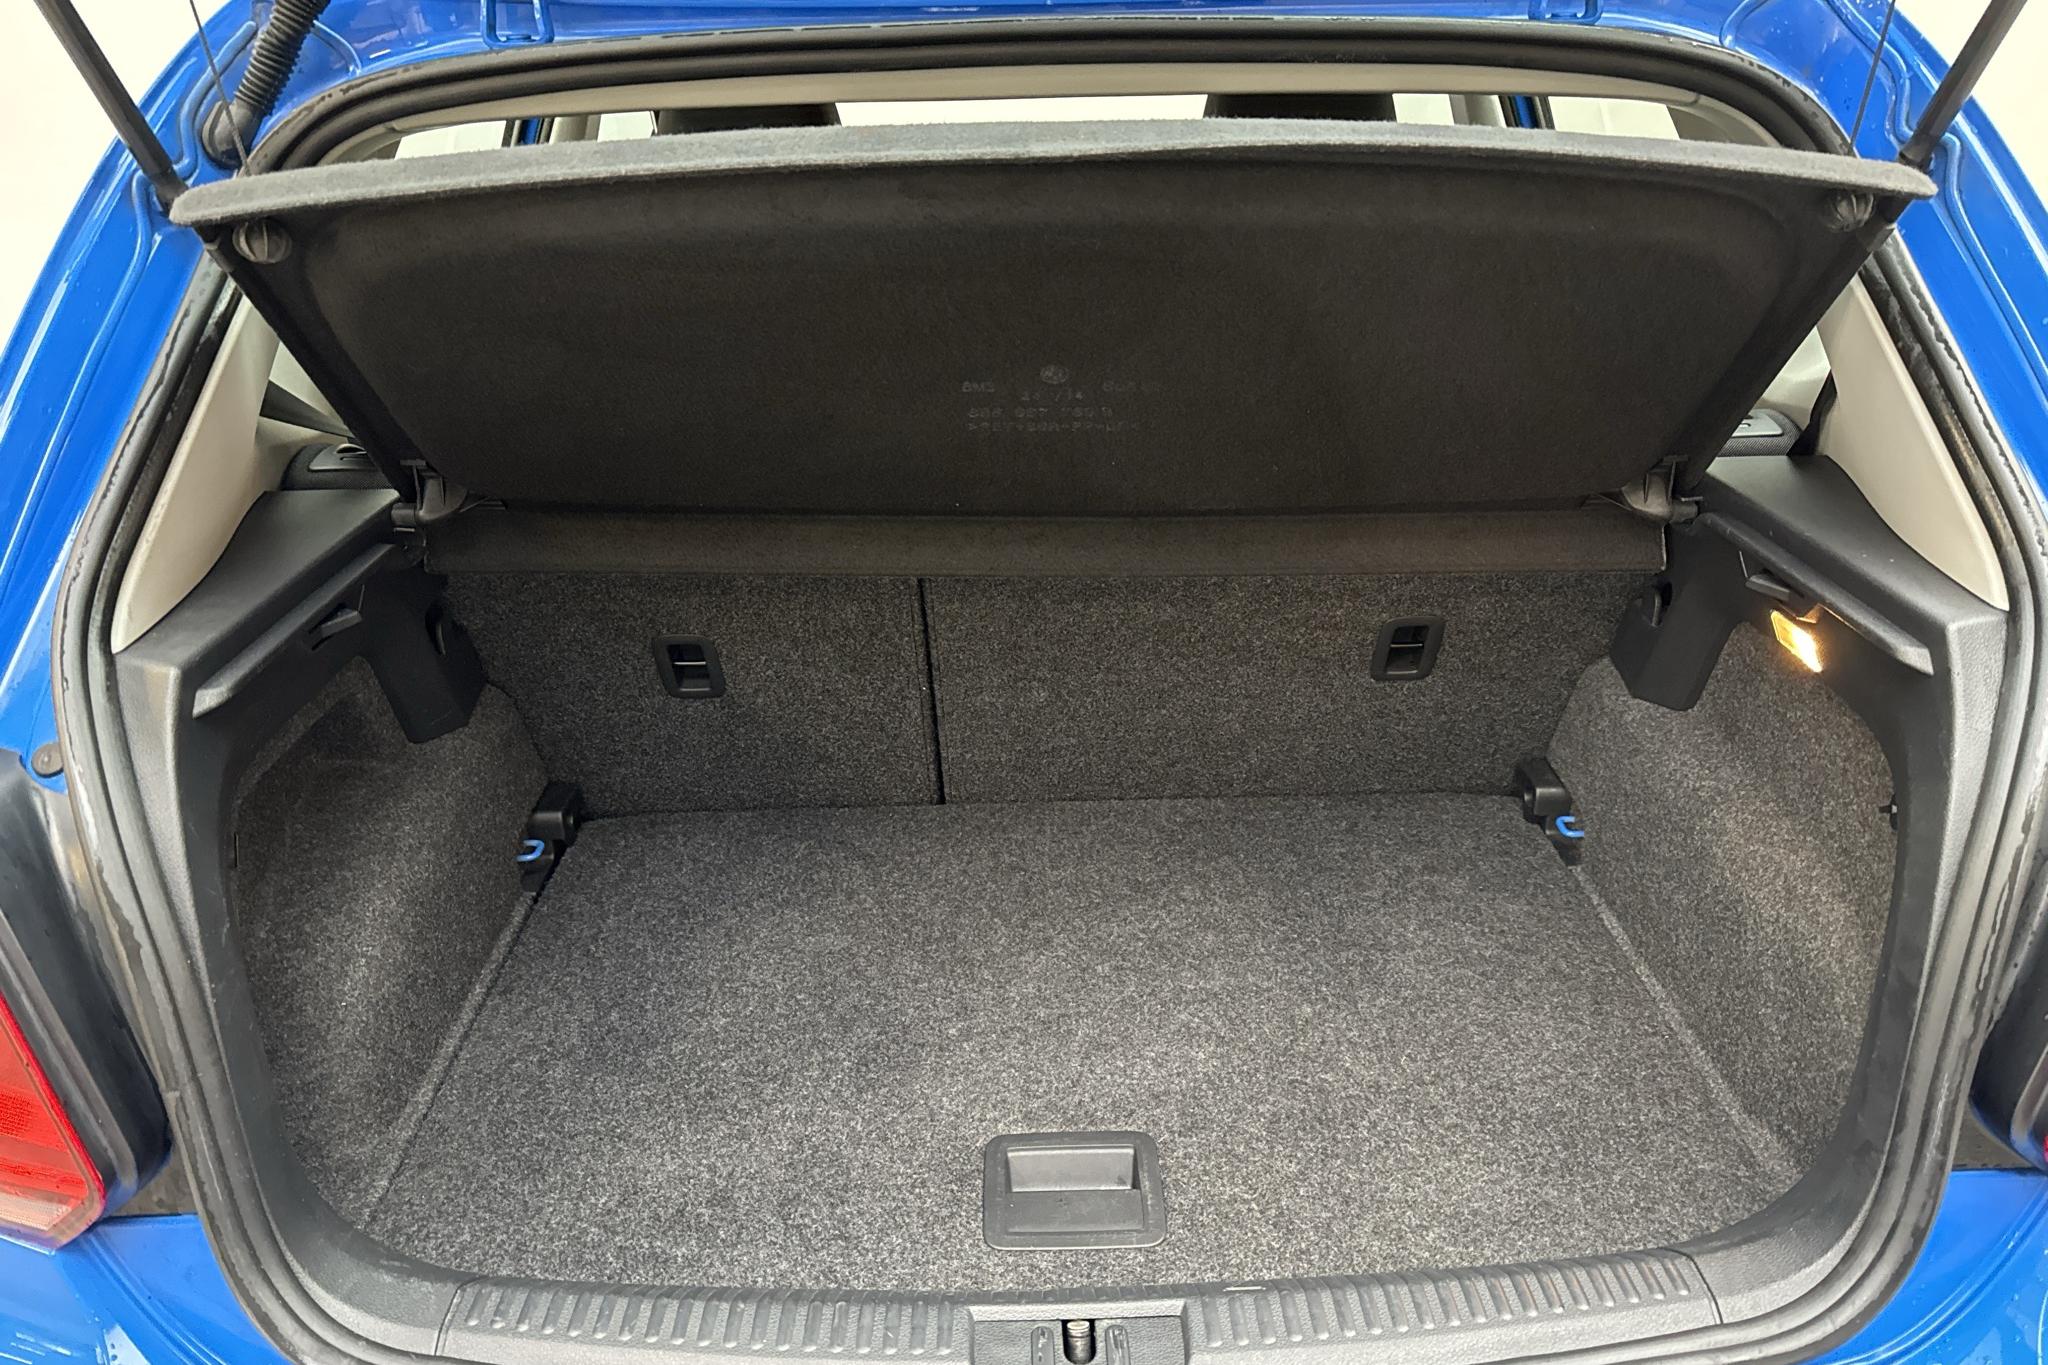 VW Polo 1.2 TSI 5dr (90hk) - 136 260 km - Manual - blue - 2015